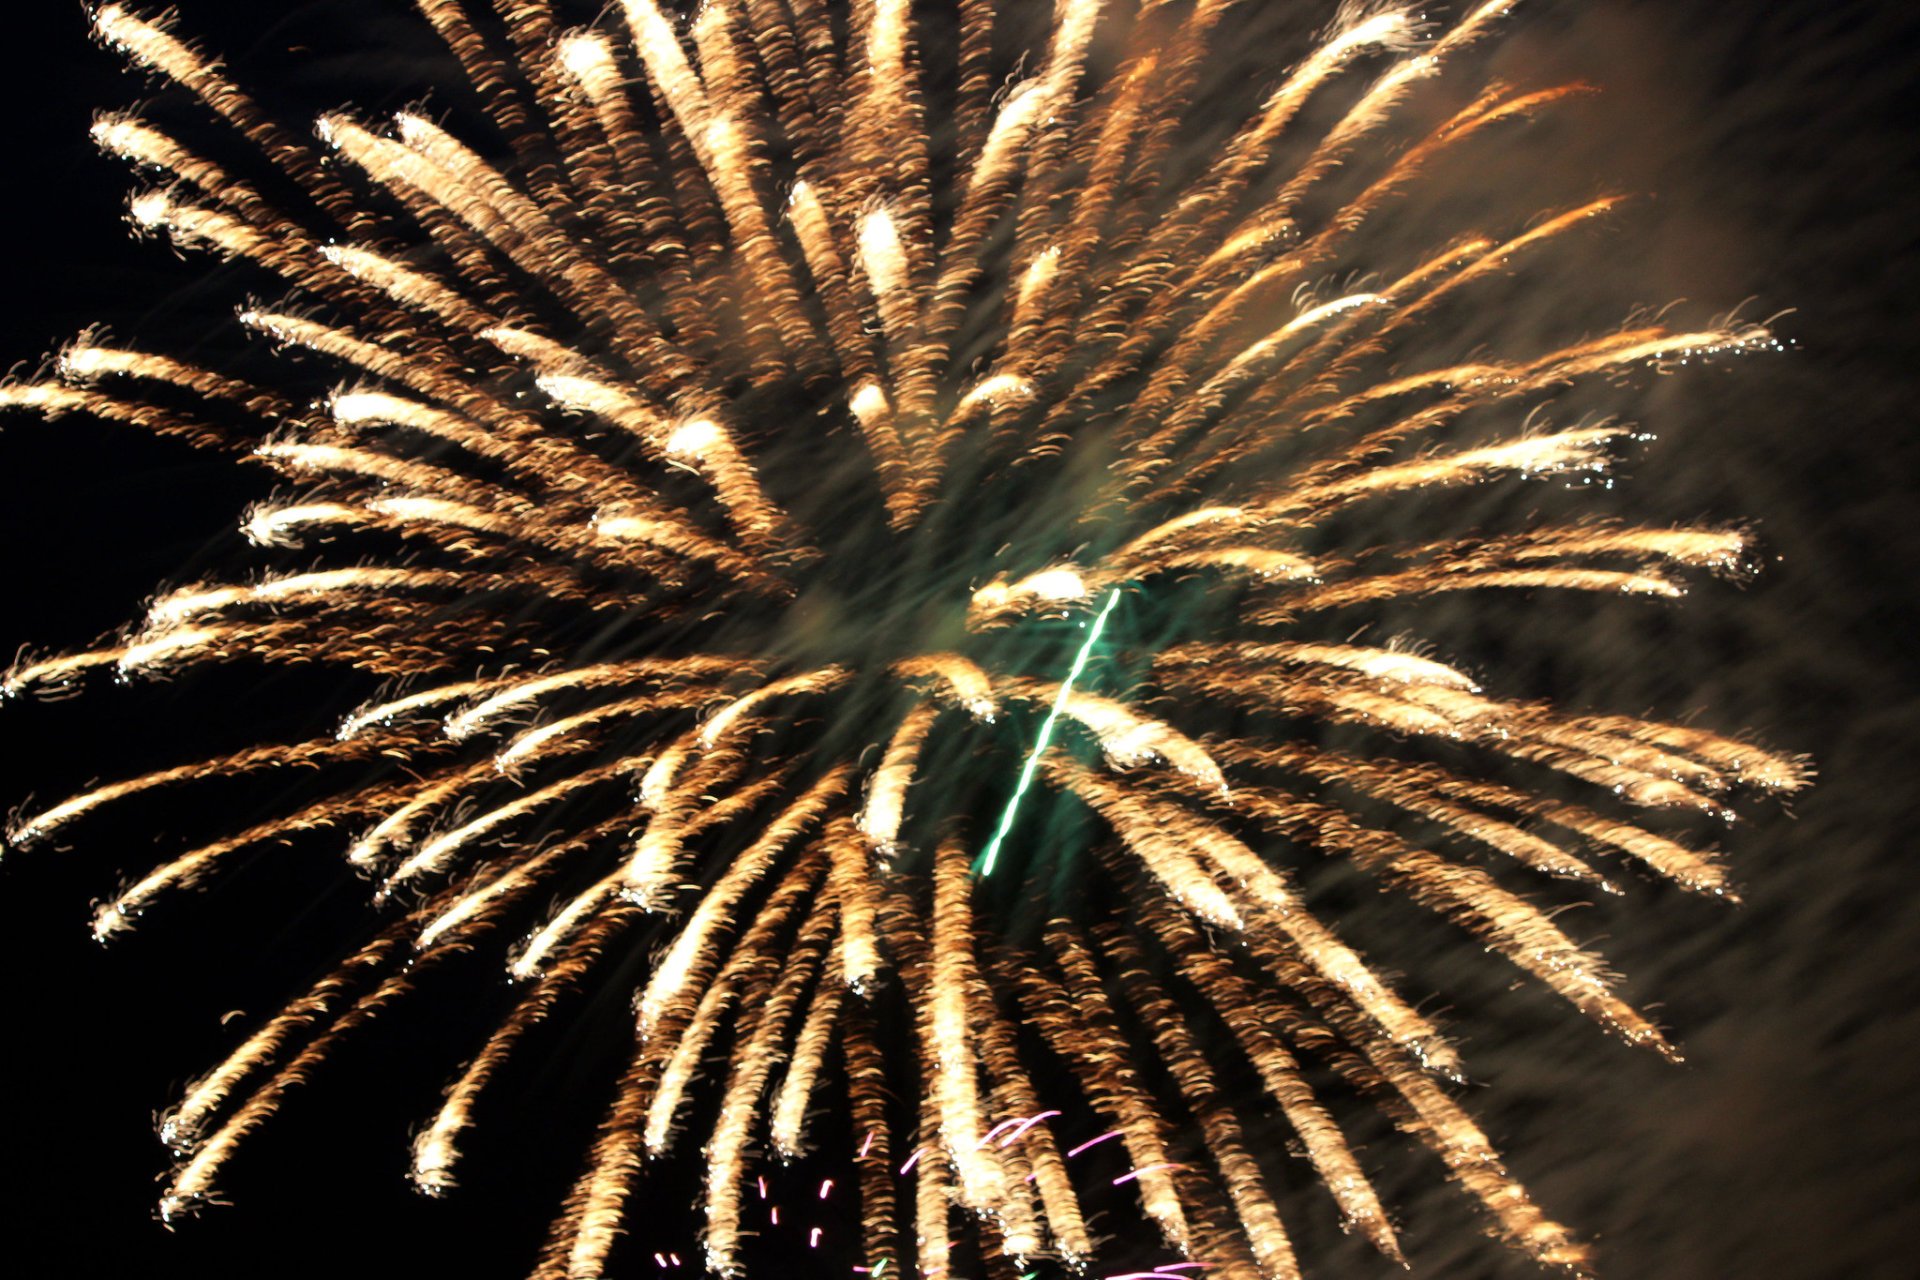 Dover 4. Juli Feuerwerk, Paraden, Shows & Veranstaltungen